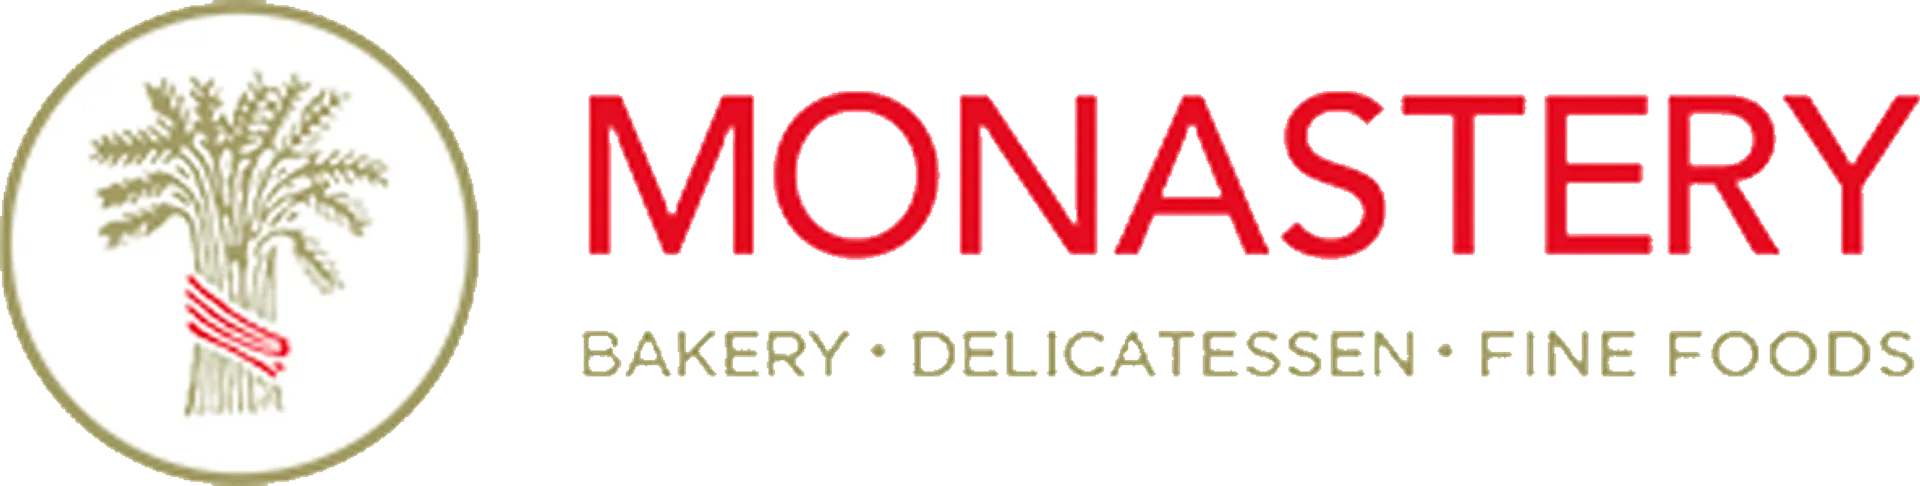 MONASTERY BAKERY logo